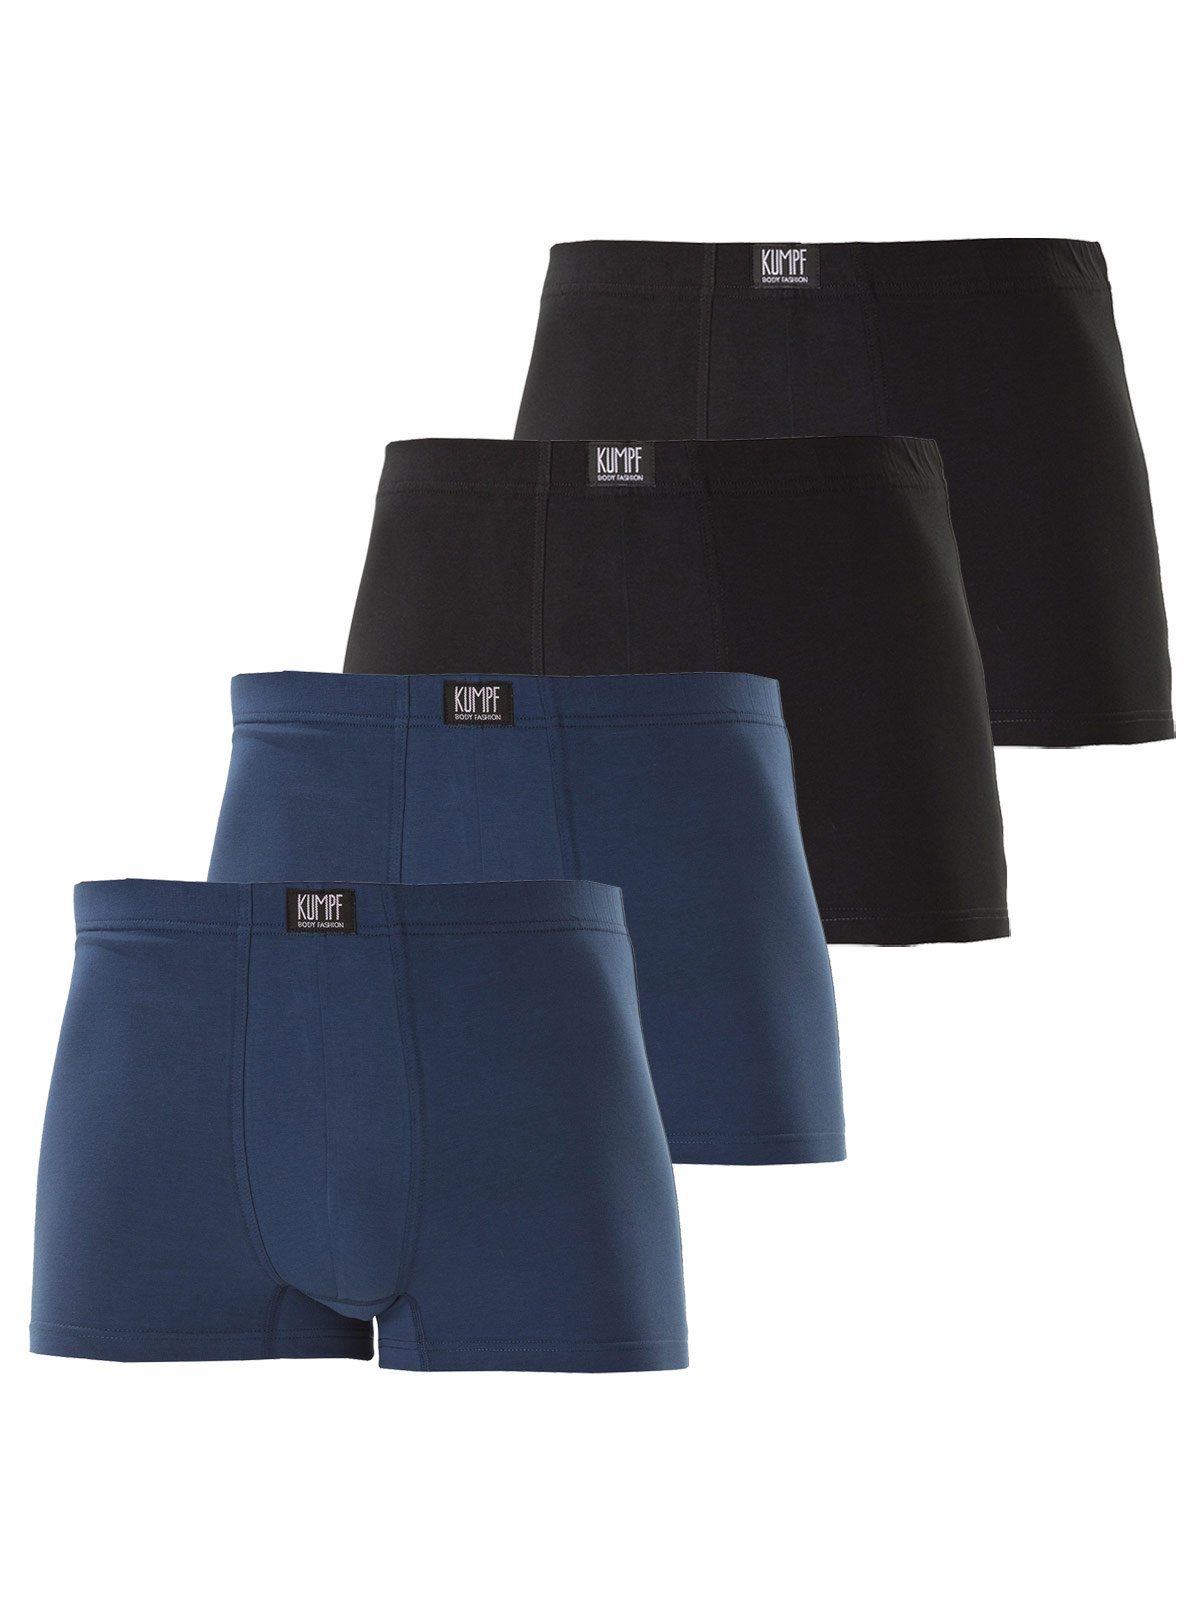 KUMPF Retro Pants 4er hohe schwarz Pants 4-St) Sparpack darkblue Markenqualität Cotton Bio (Spar-Set, Herren